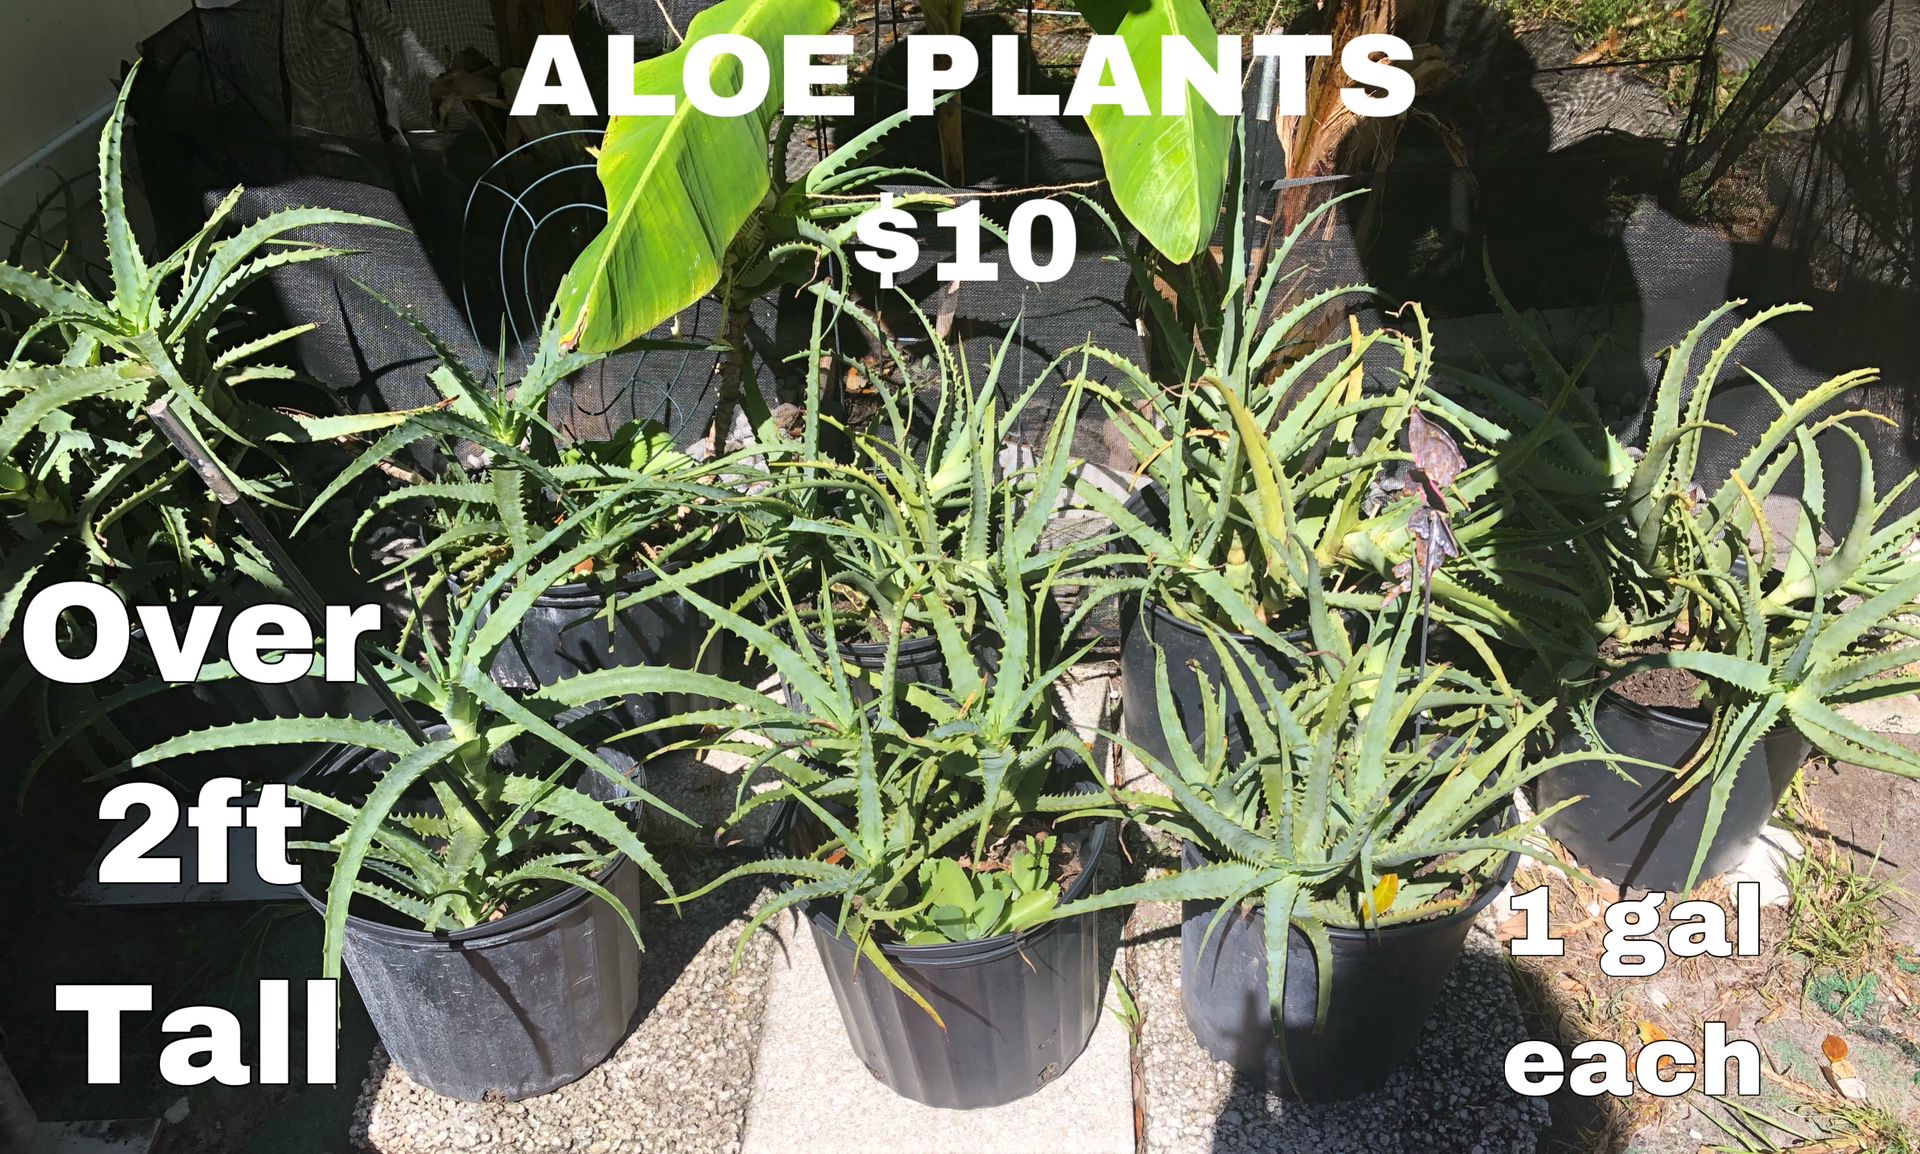 Aloe plants 3 Gallon